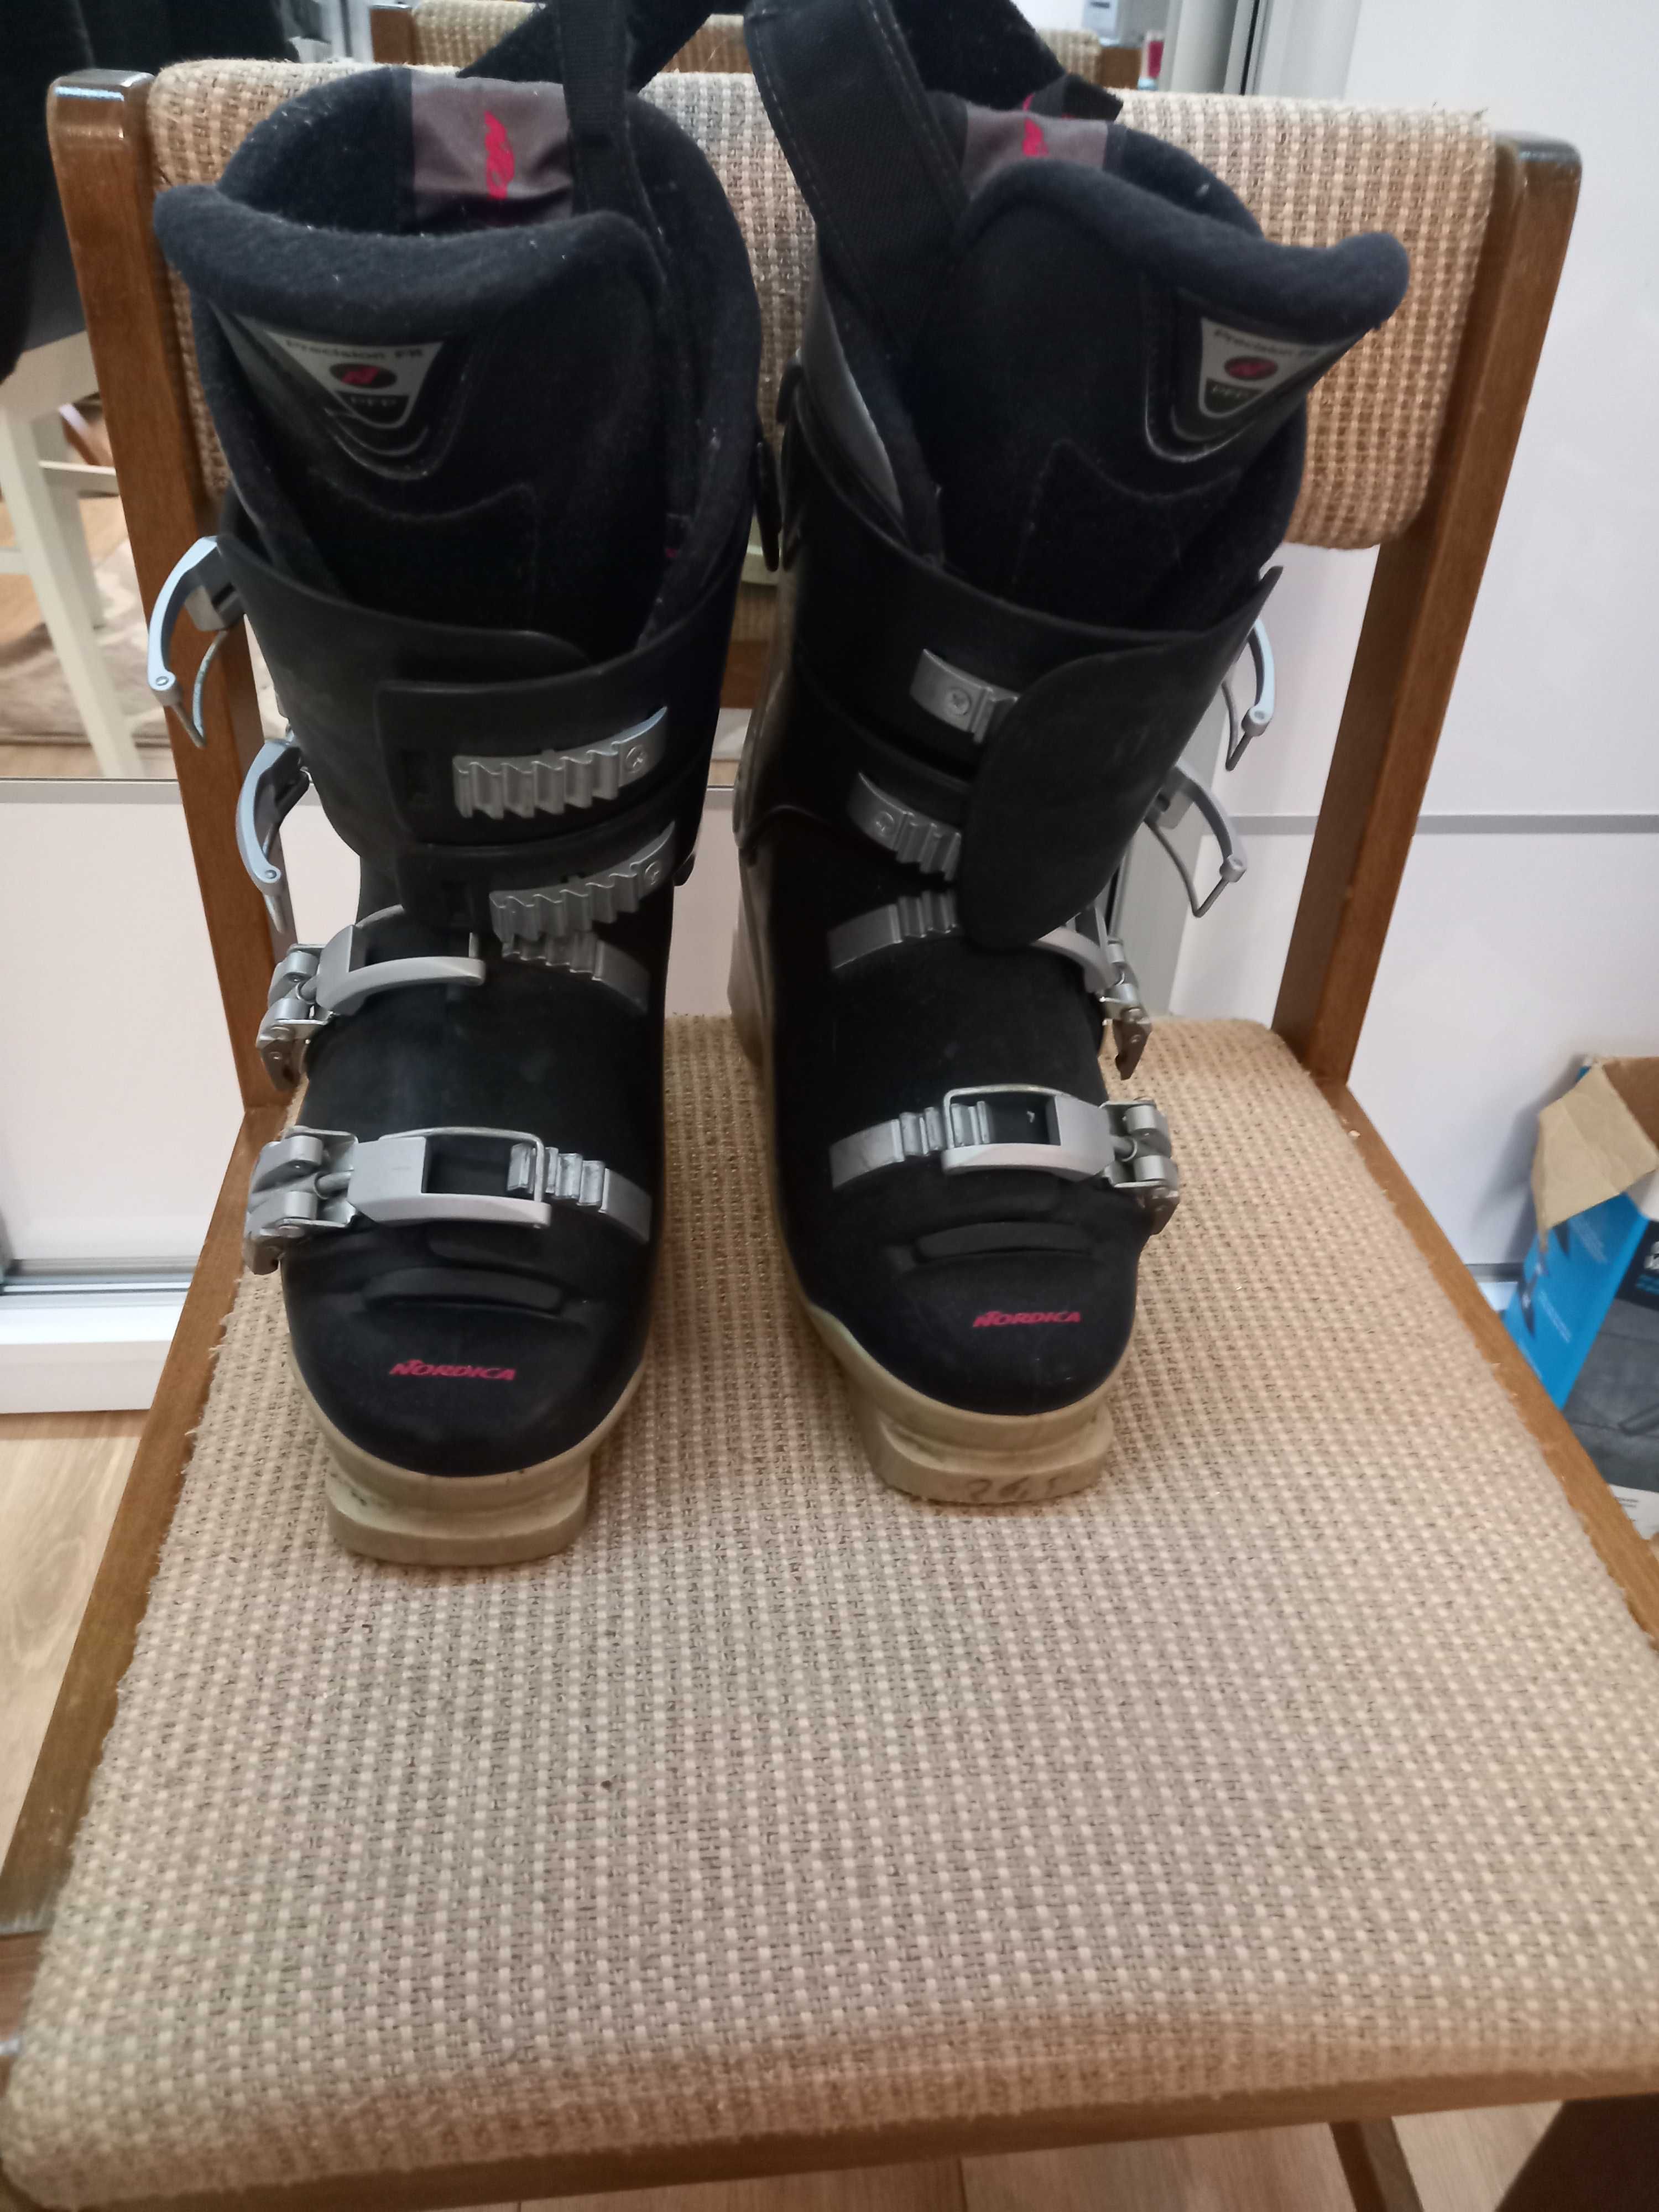 Buty narciarskie Nordica K-7.1.w